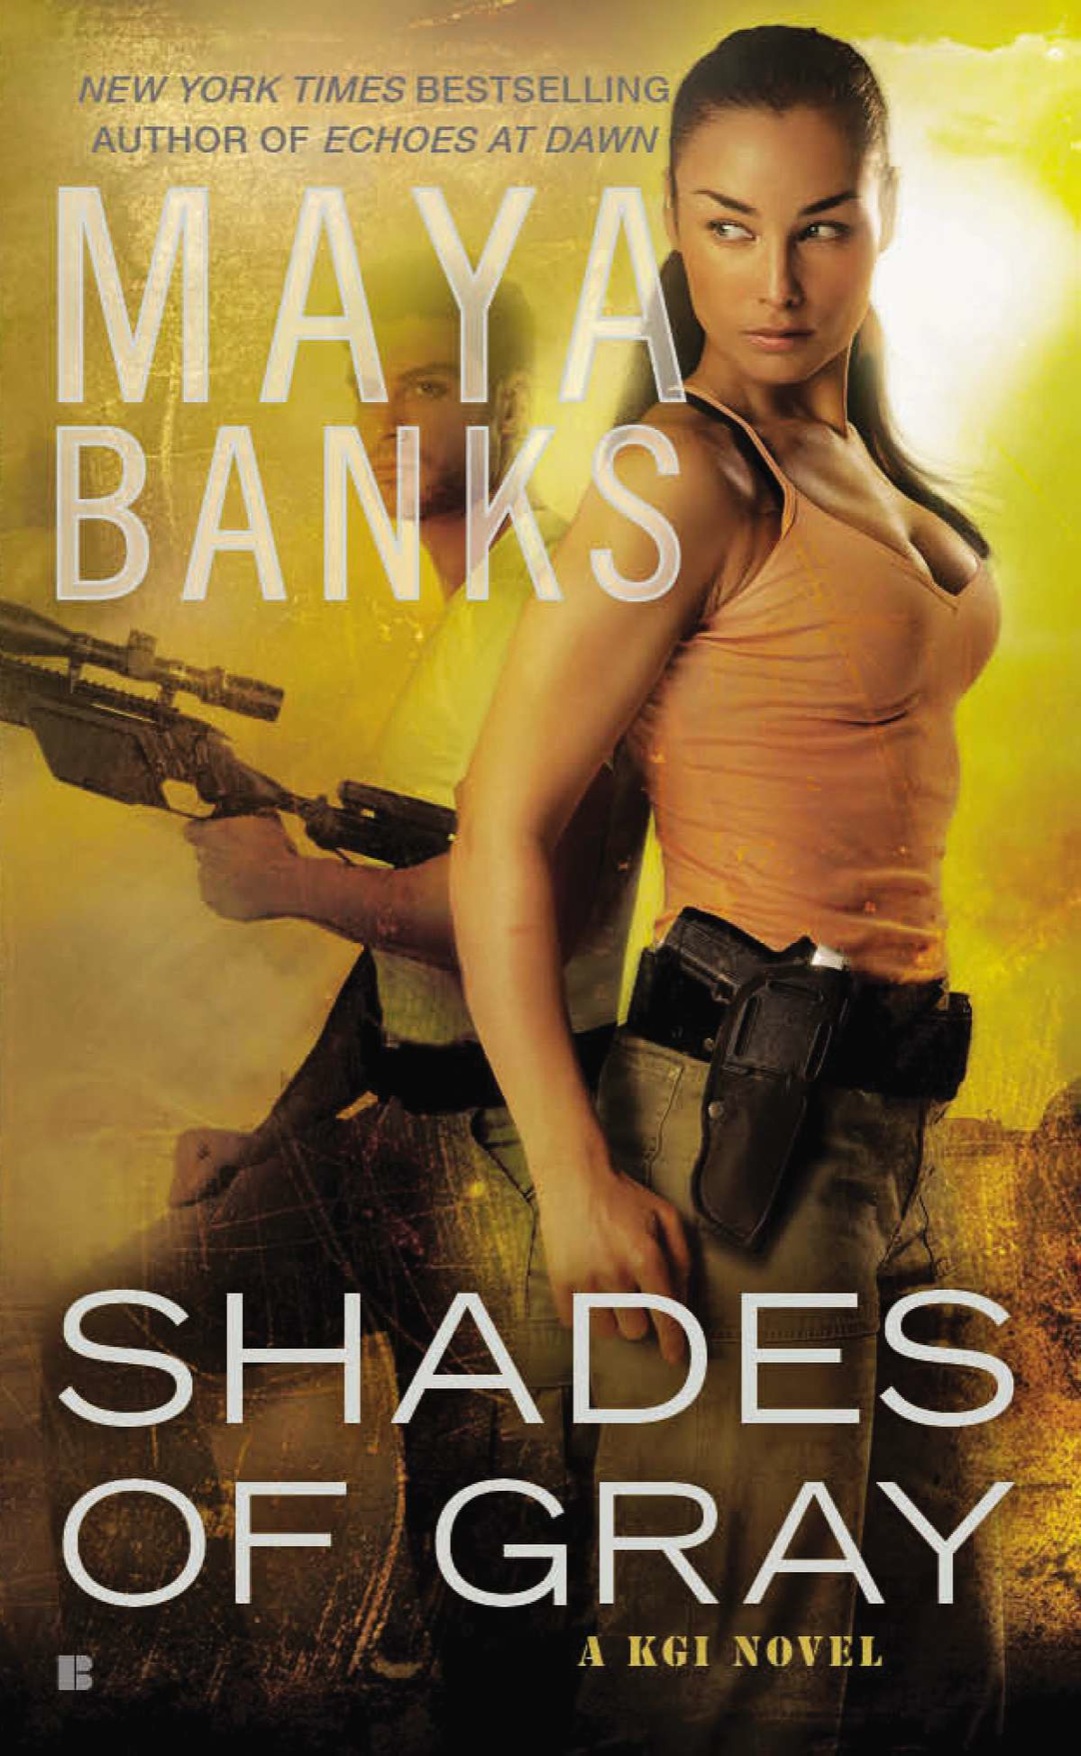 Shades of Gray (2012) by Maya Banks